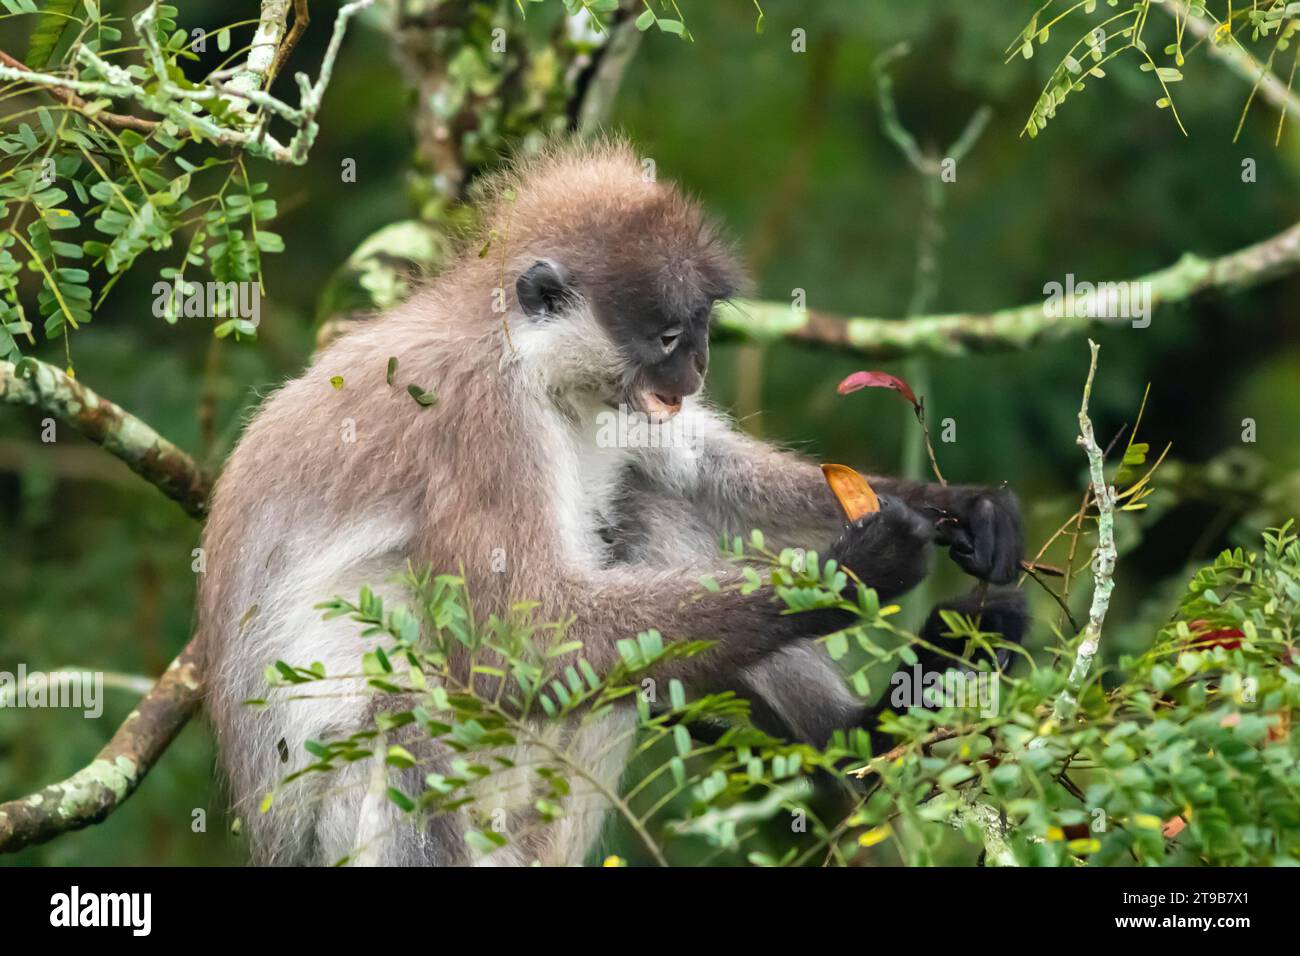 Ein einsamer Dusky-Blatt-Affe (Trachypithecus obscurus), der auch als Brillenglätter bekannt ist, isst die Samenkapsel vor dem gelben Flammenbaum in Malaysia. Stockfoto